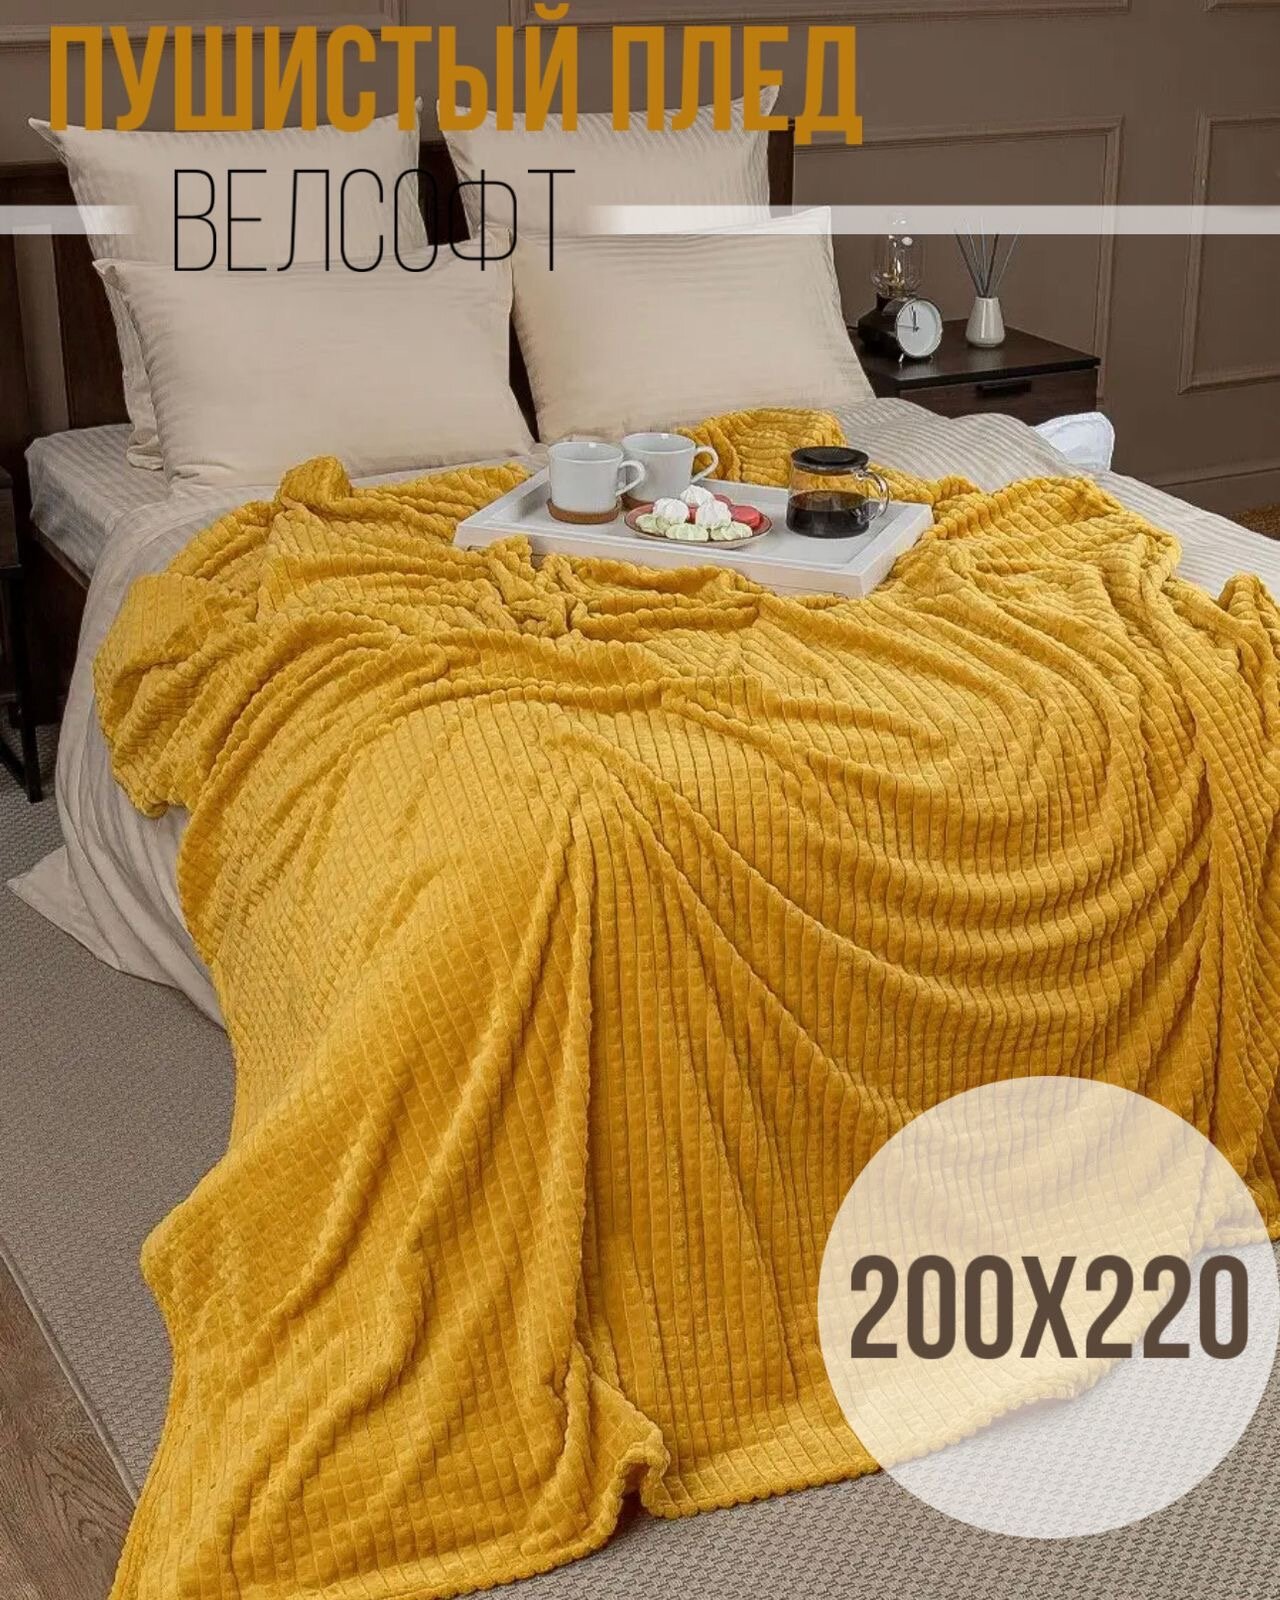 Пушистый Плед покрывало Велсофт кубик Евро 200х220, накидка на кровать, Желтый